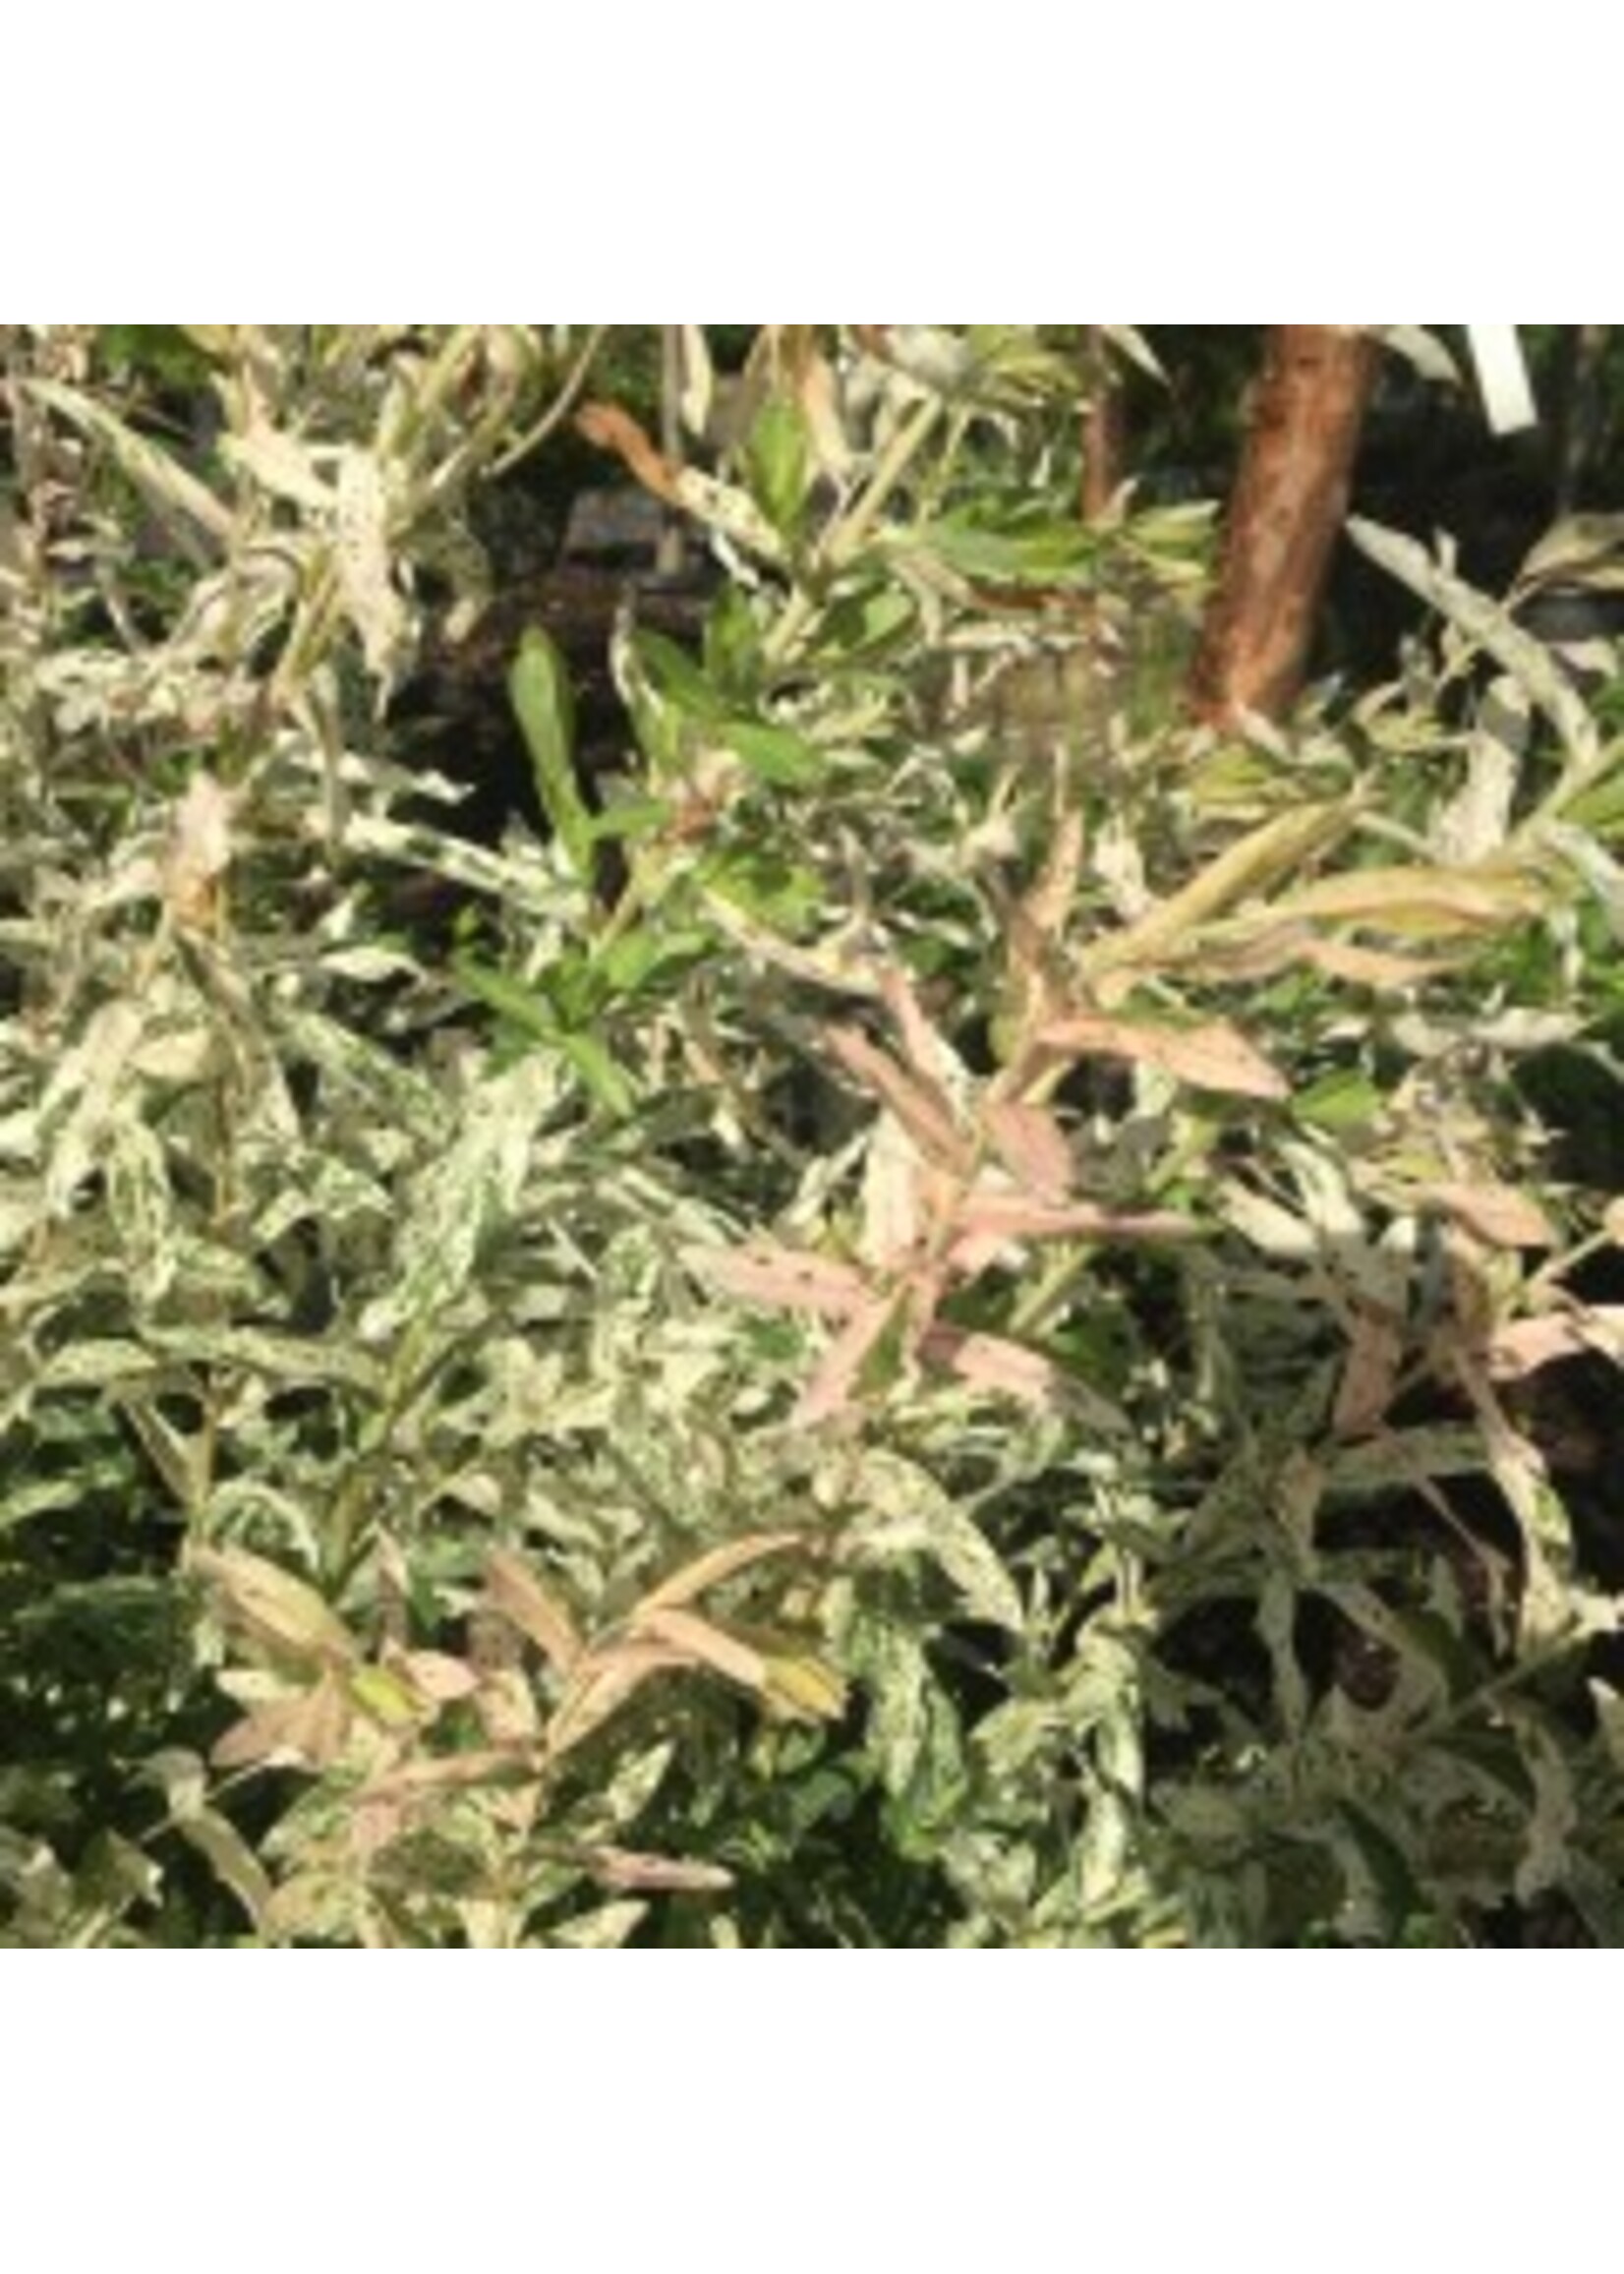 Rain Garden Salix int. Hakuro Nishiki, Dappled Willow #3